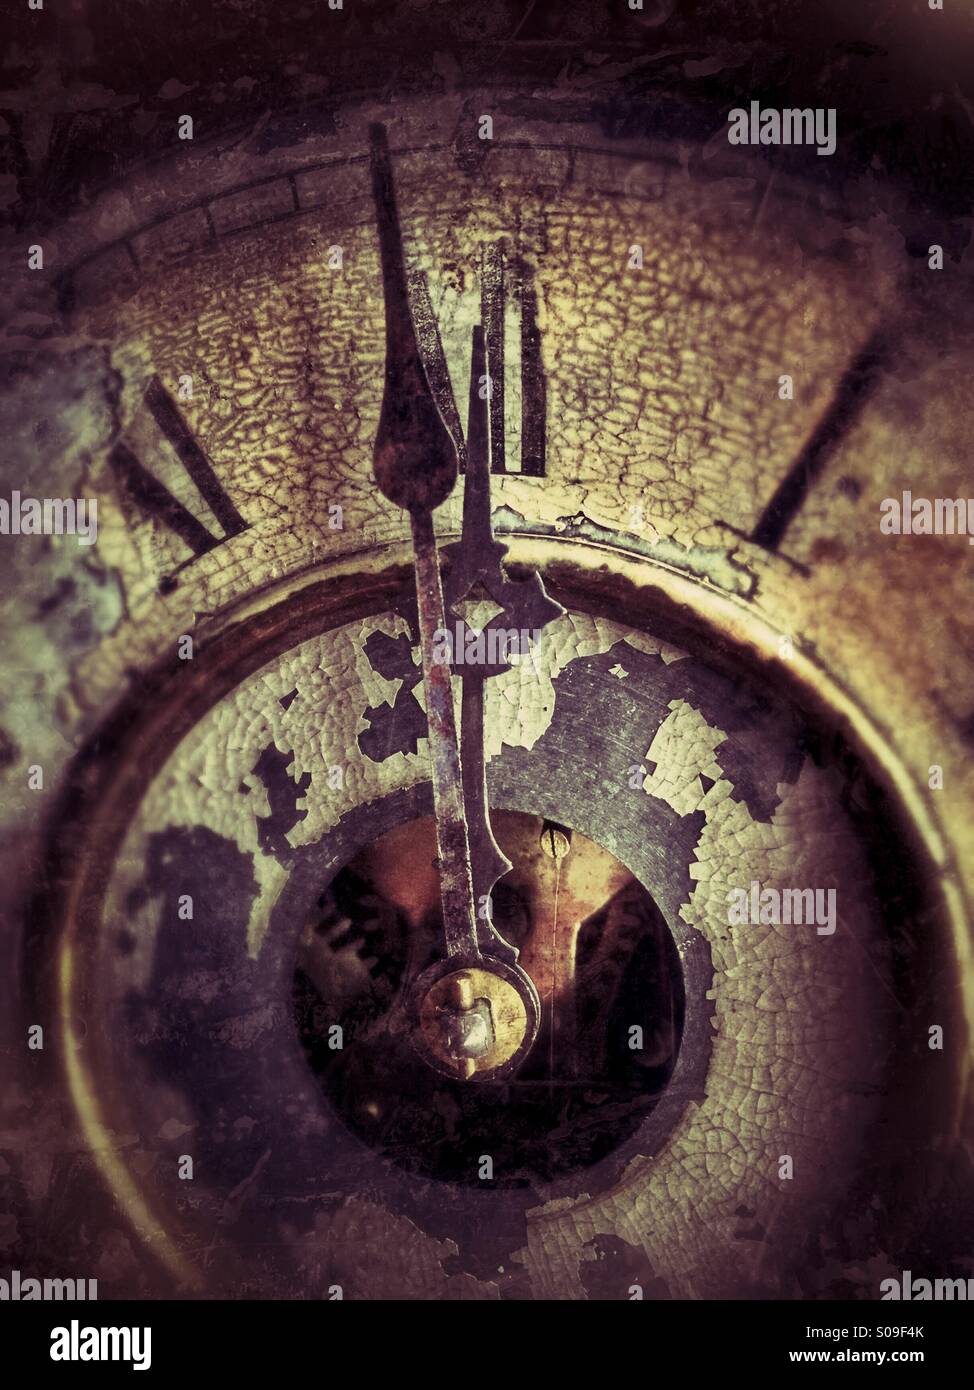 Eine Minute vor Mitternacht auf eine antike Uhr. Stockfoto